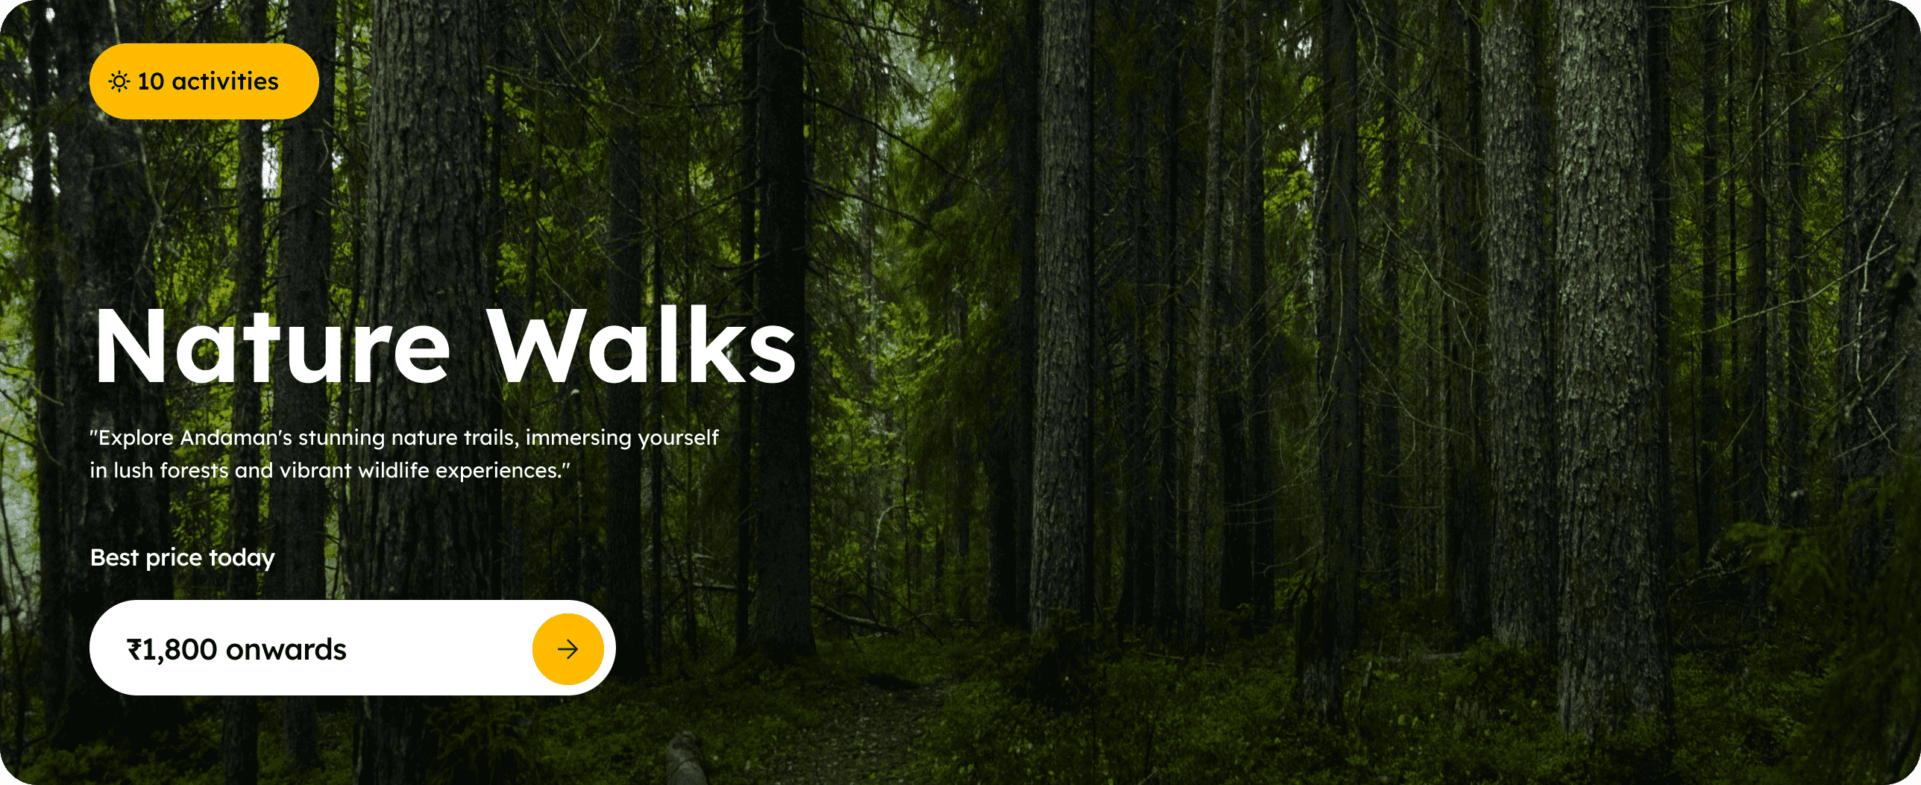 Nature Walks in Andaman